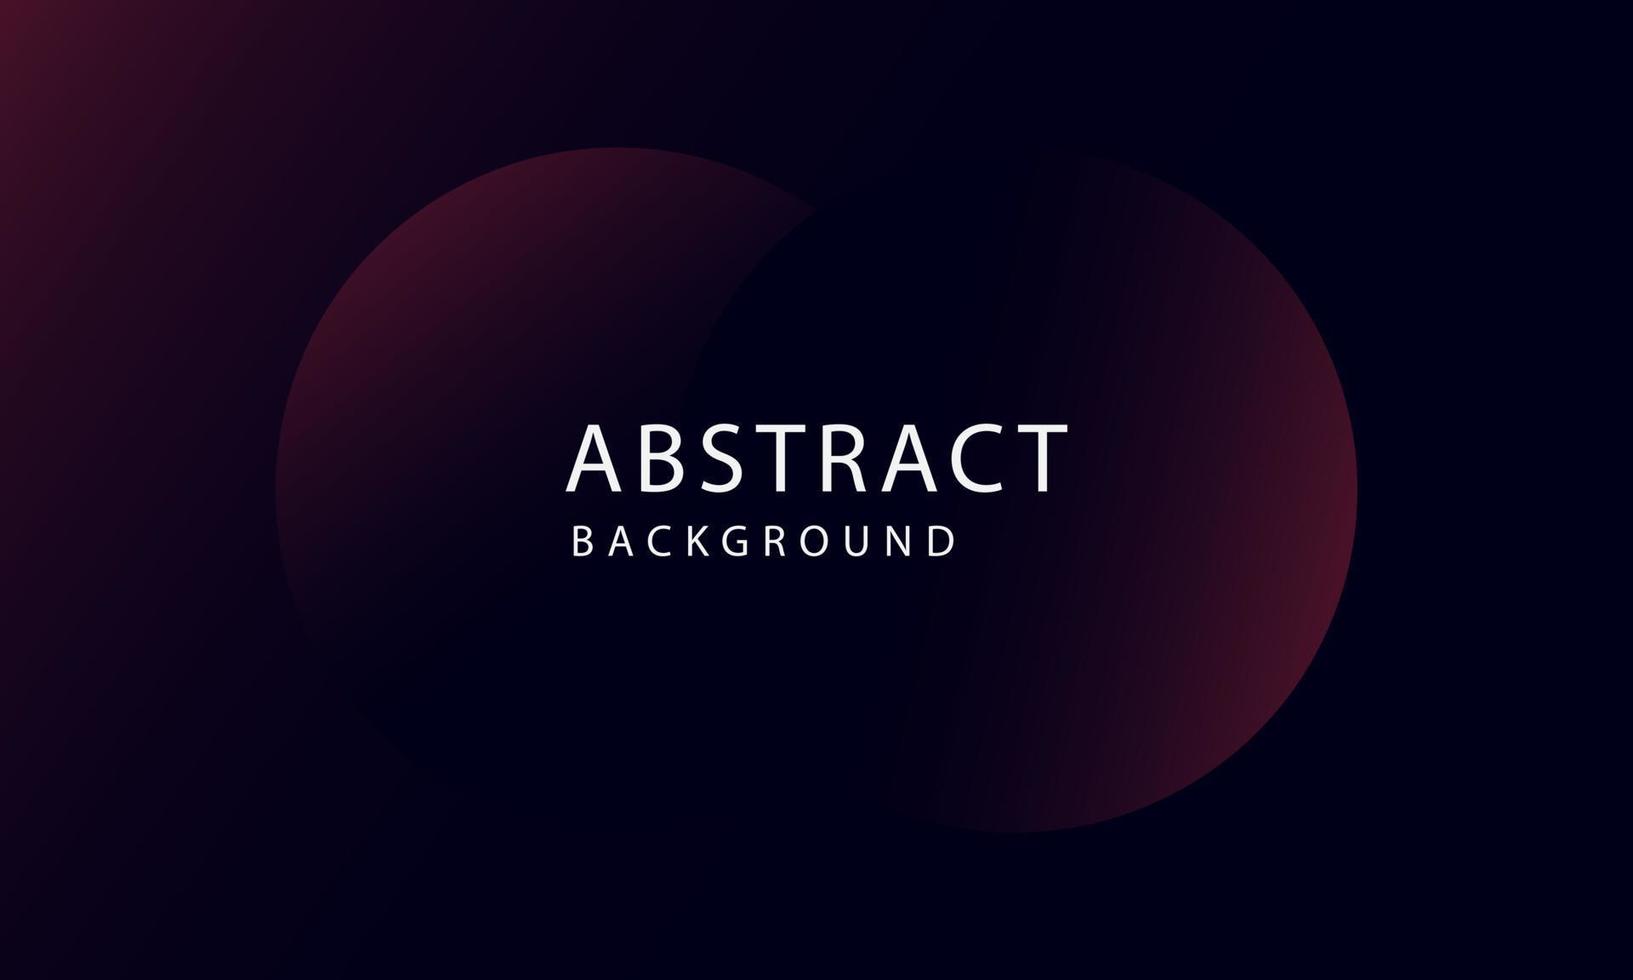 abstracte donkerpaarse achtergrond vector overlap laag op donkere ruimte voor achtergrondontwerp. exclusief behangontwerp voor poster, brochure, presentatie, website etc.